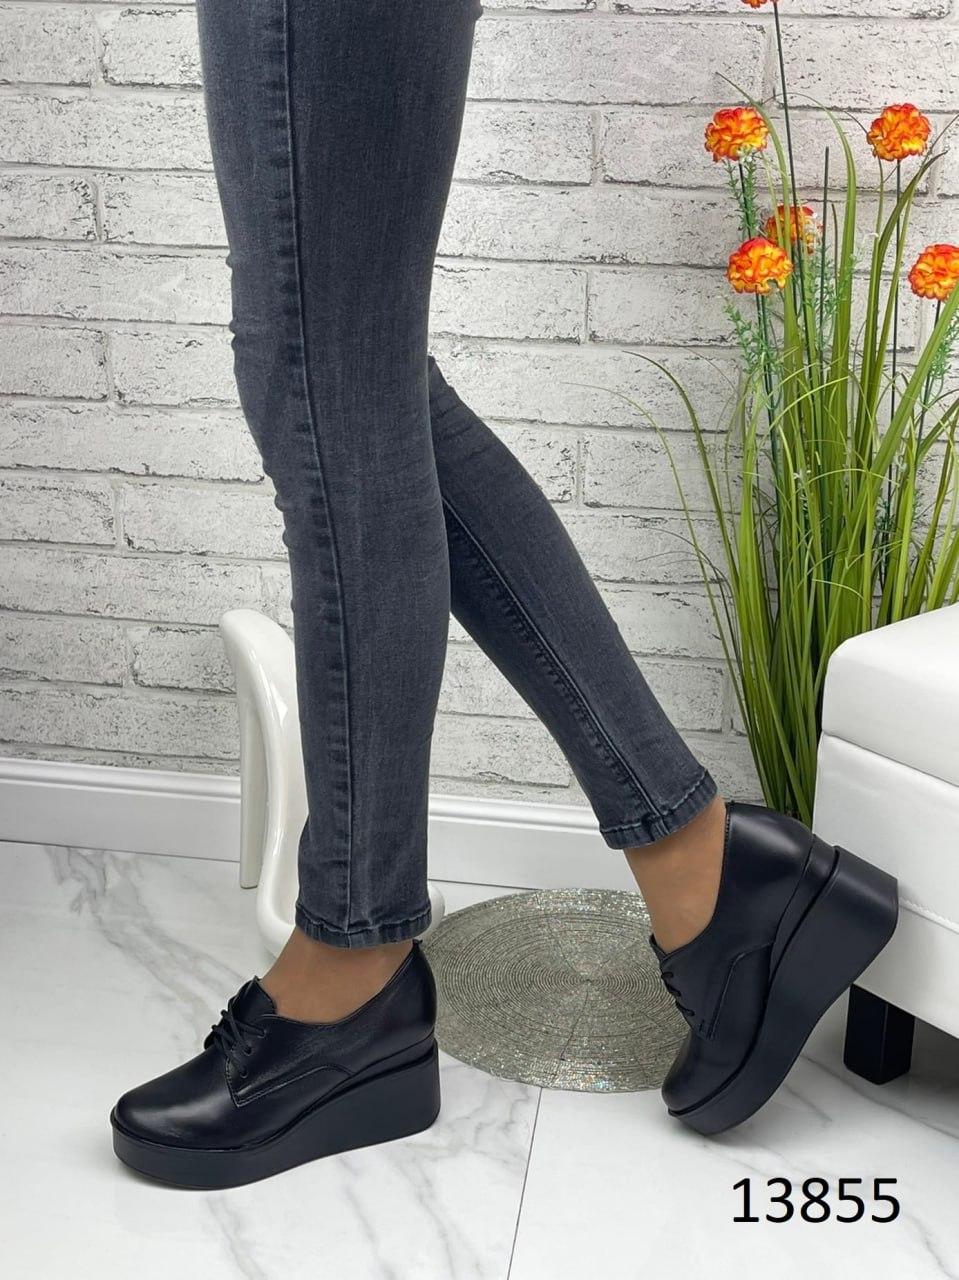 Жіночі черевики Zara, натуральна шкіра, чорного кольору.